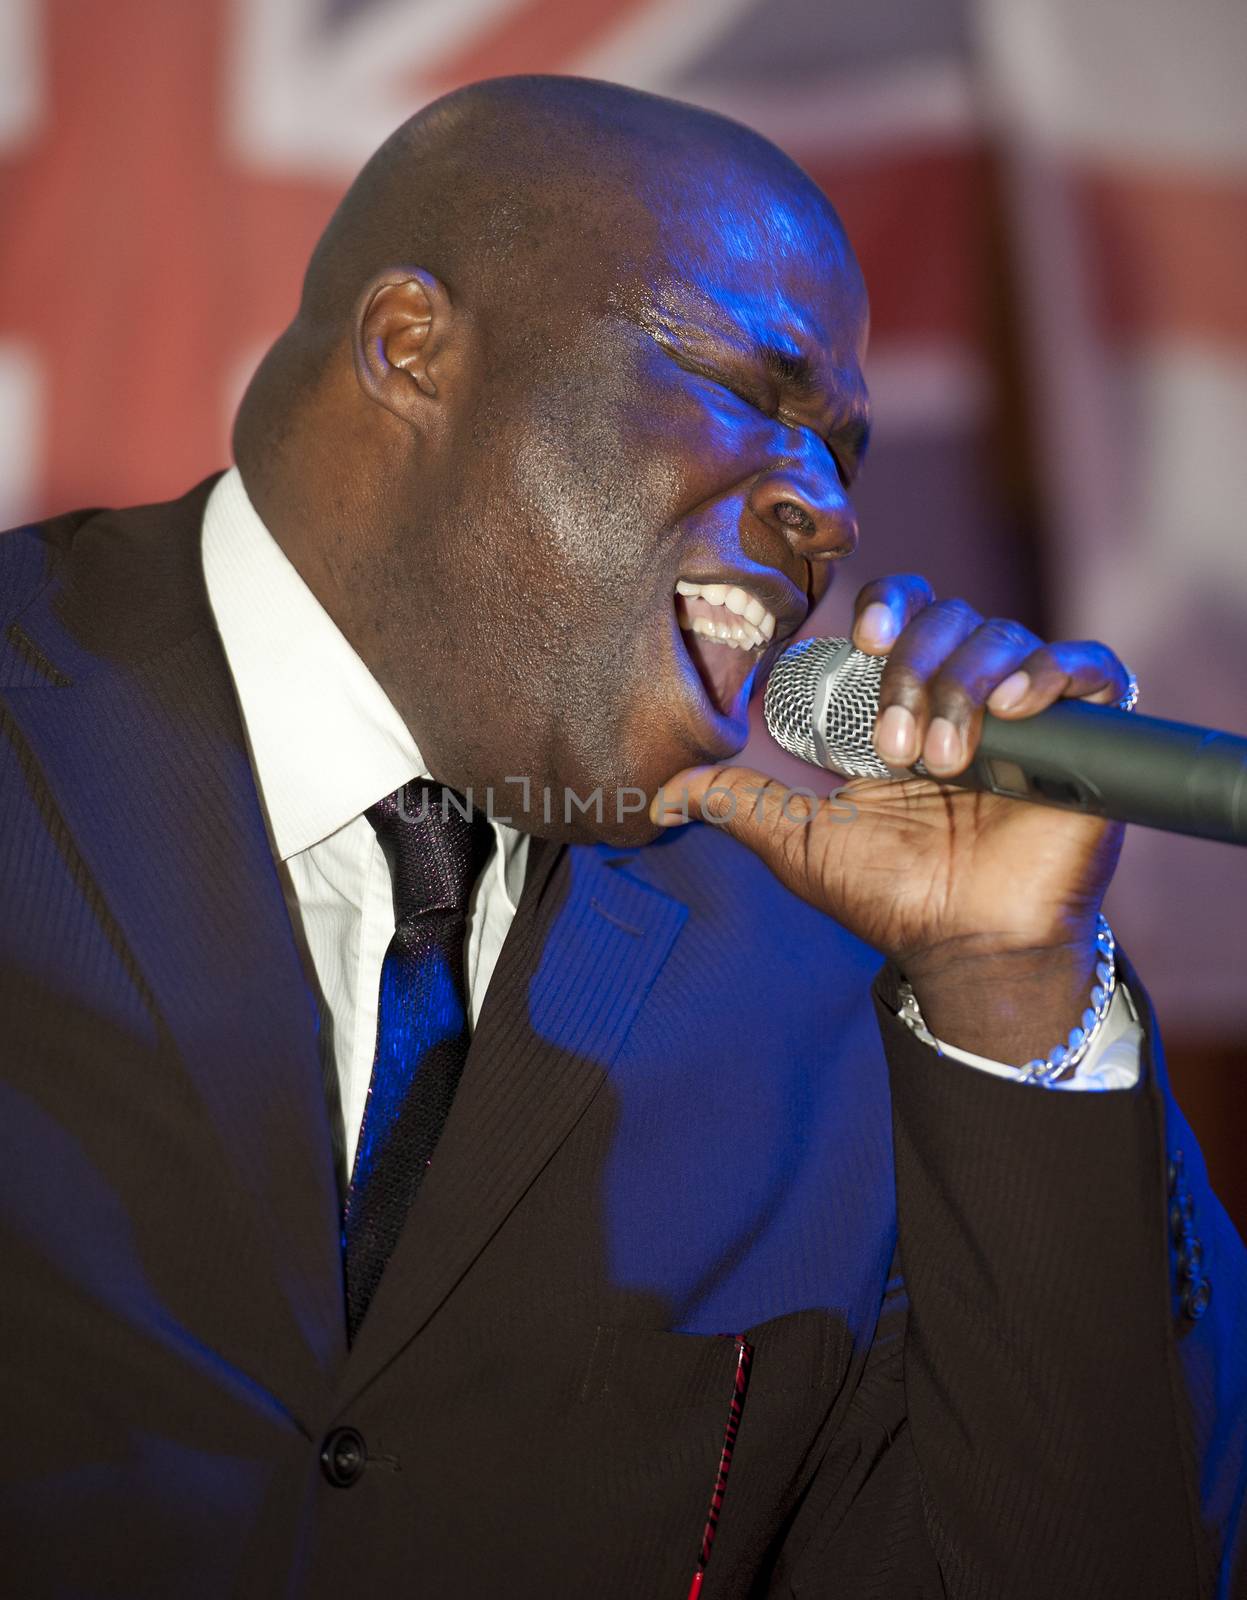 Negro man singing live by paulvinten